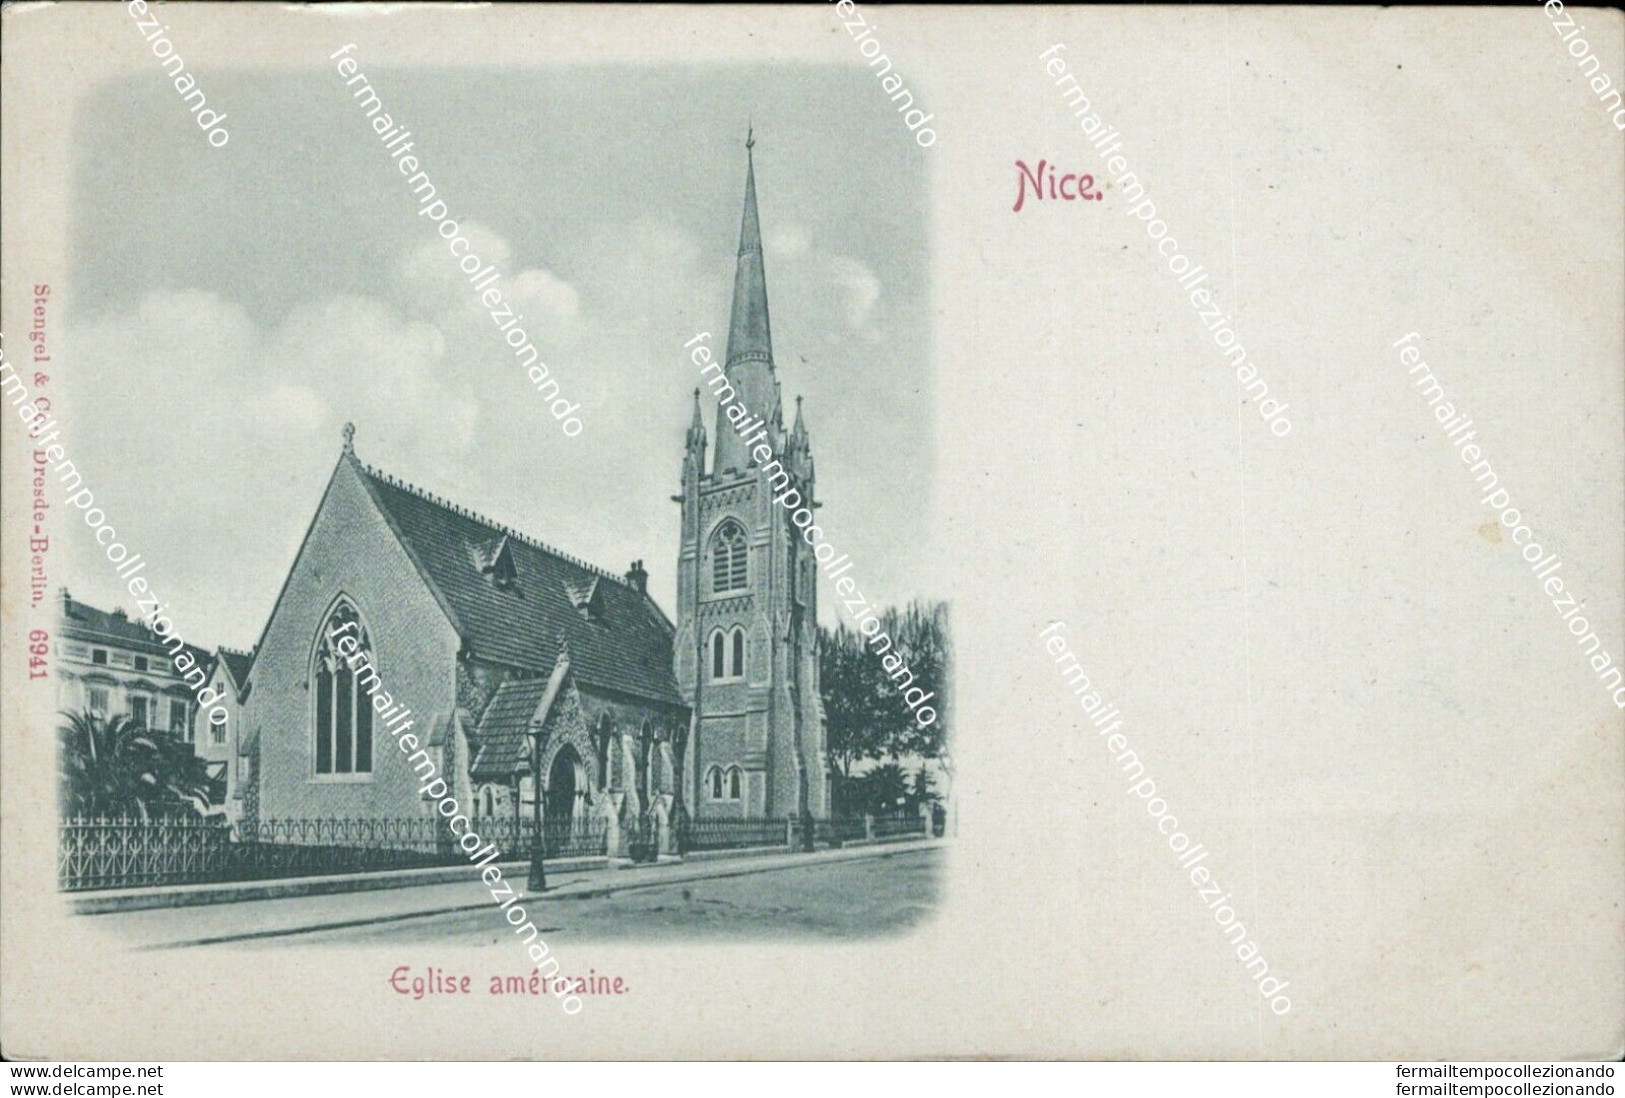 Bd78 Cartolina Nice Eglise Americaine - Monumenti, Edifici